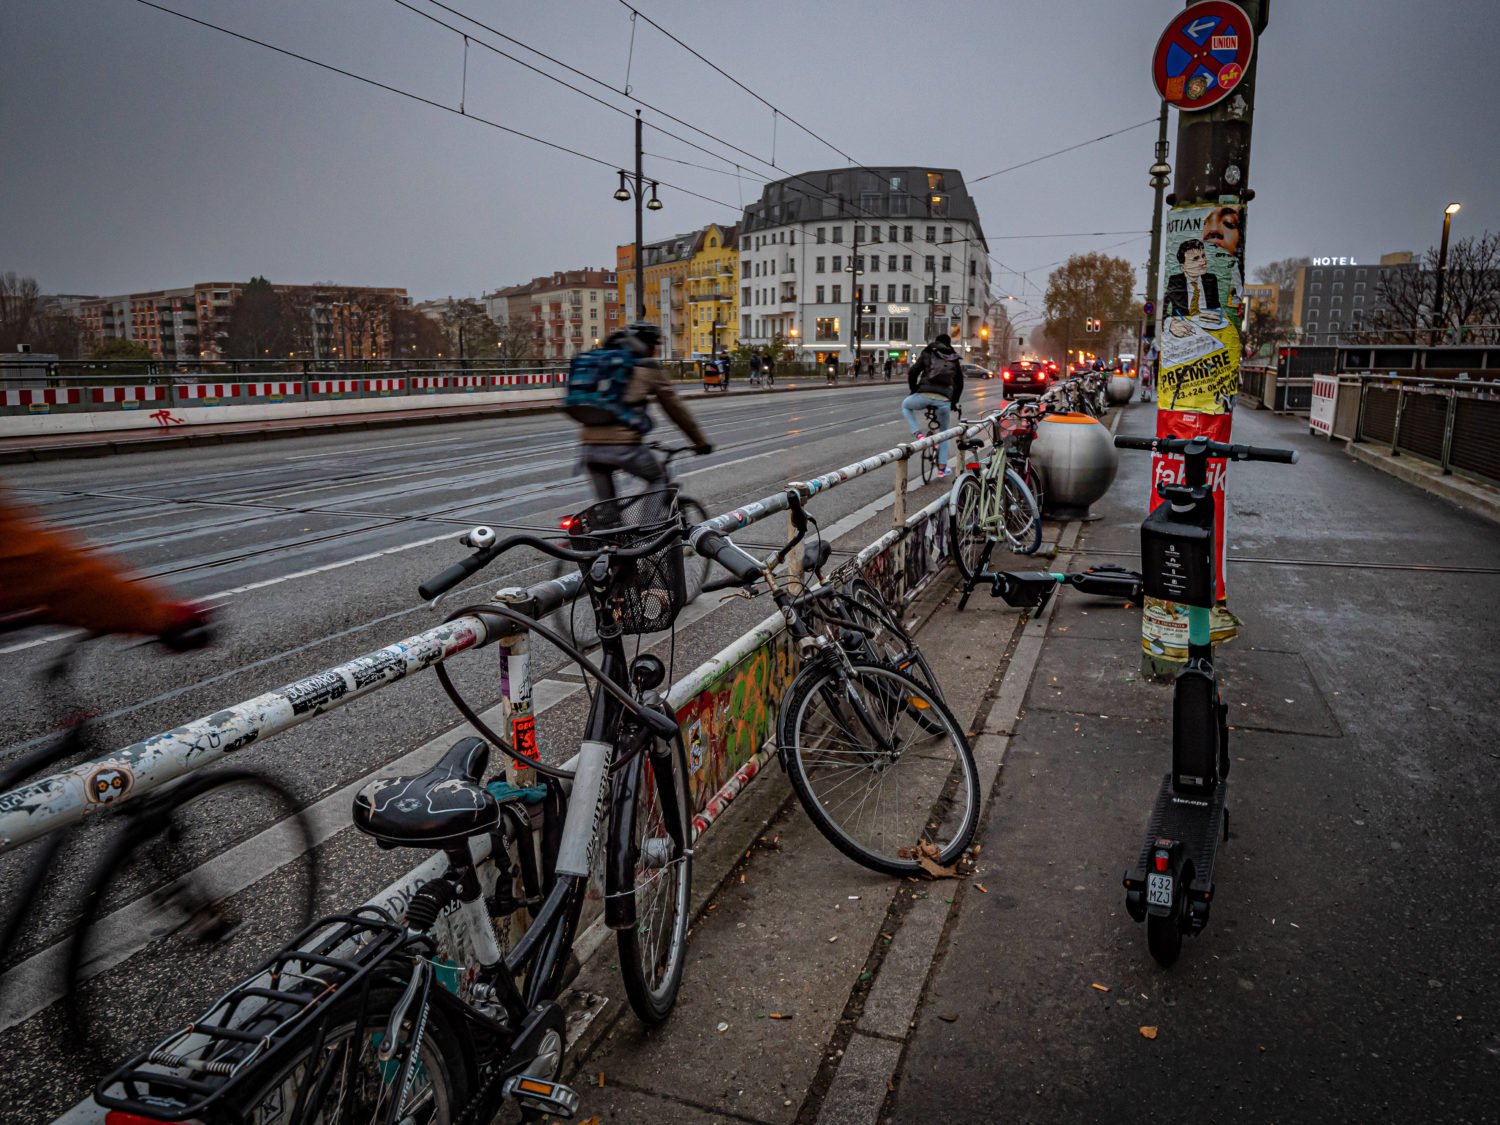 Berlin Friedrichshain, Warschauer Straße. Hier würden wir gern den Schnelltest machen, statt dafür ins KitKat zu fahren.  Foto: Imago Images/Jürgen Ritter